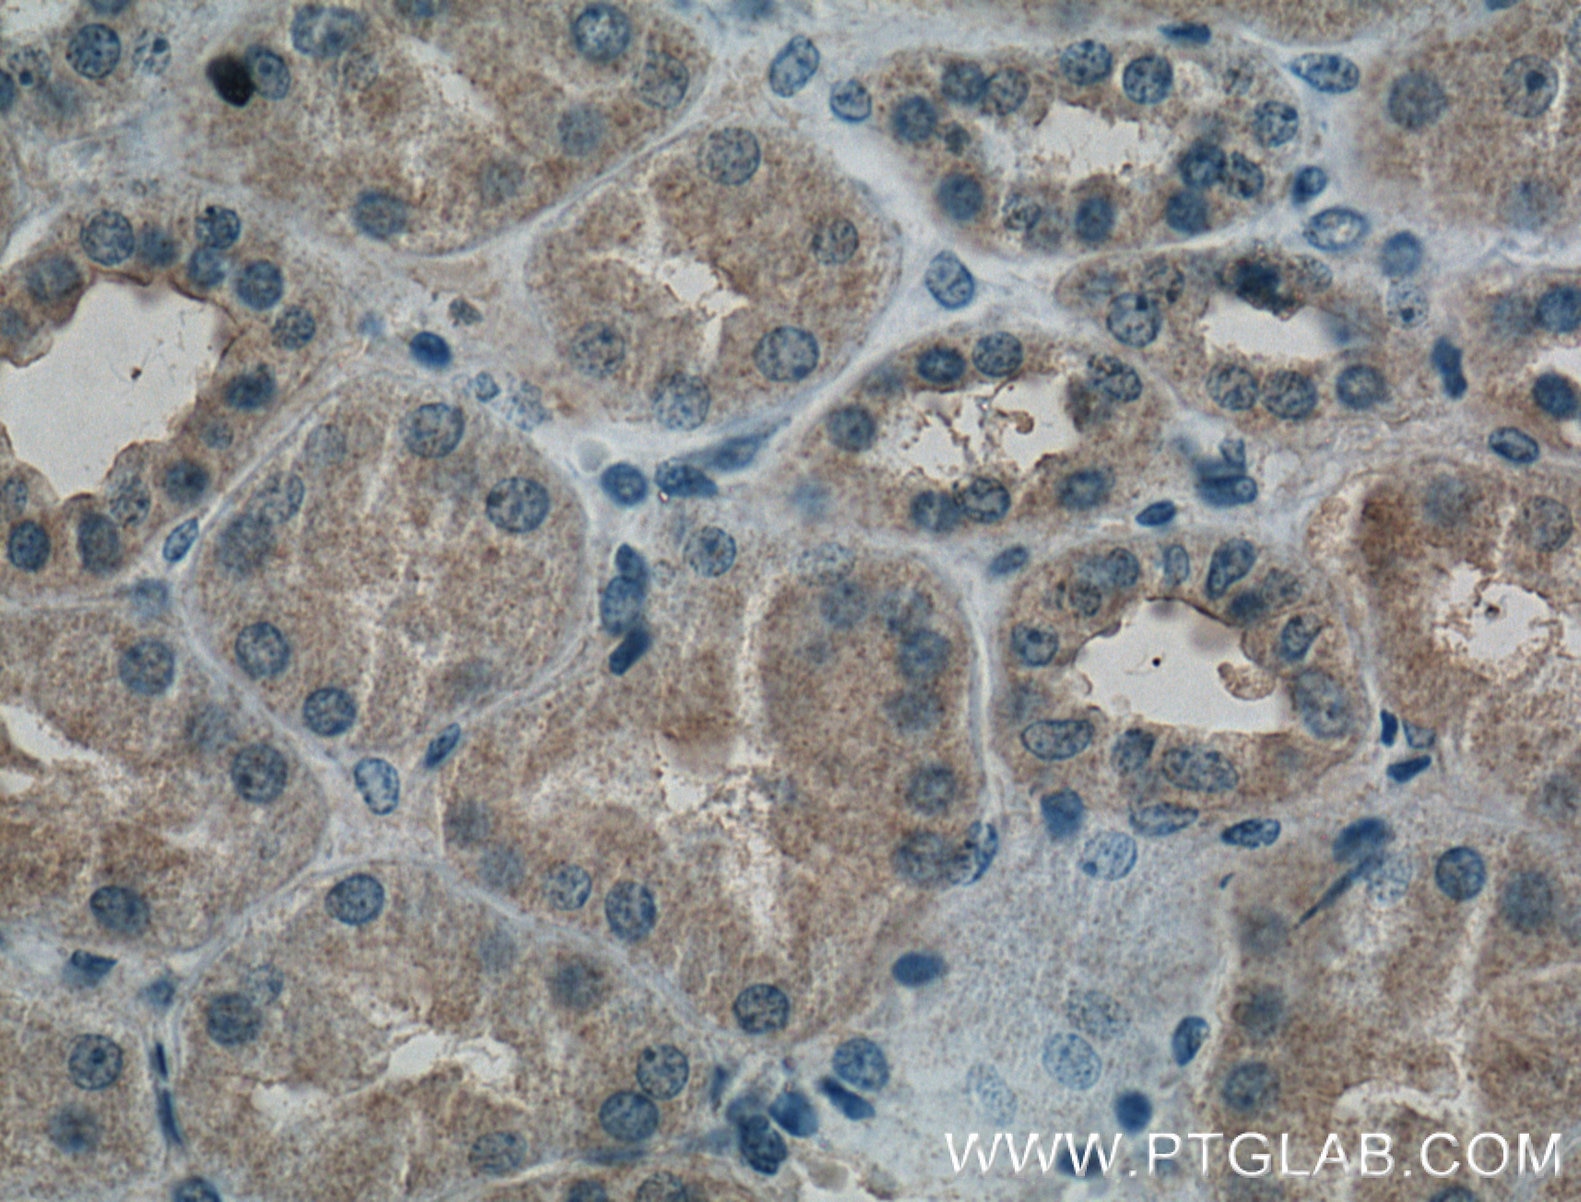 Immunohistochemistry (IHC) staining of human kidney tissue using PAI-1 Monoclonal antibody (66261-1-Ig)